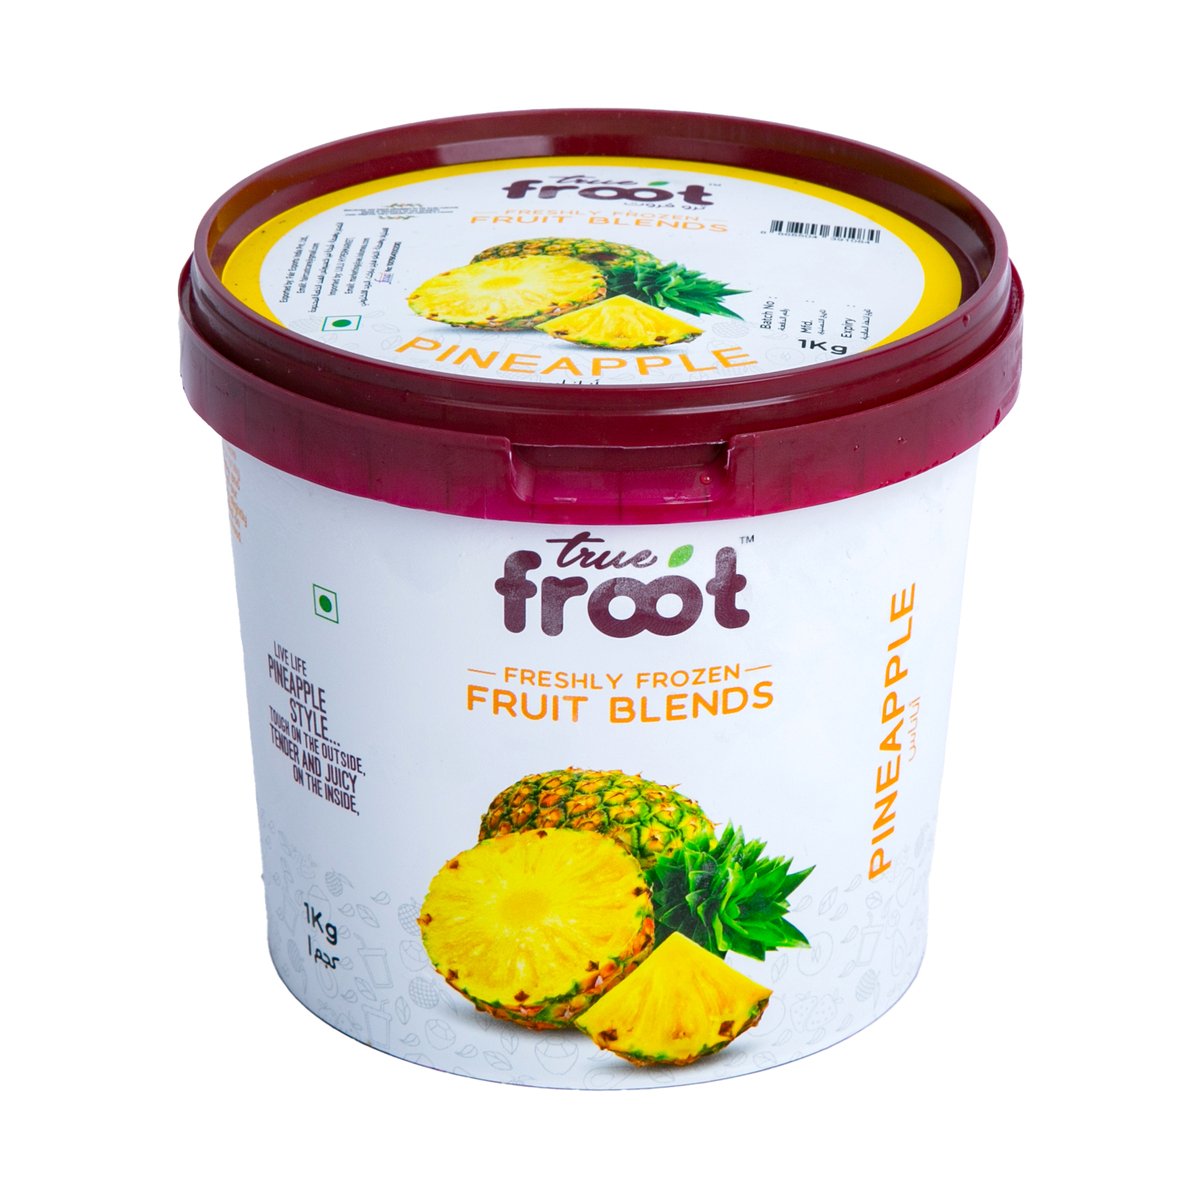 True Froot Freshly Frozen Pineapple Fruit Blend 1 kg